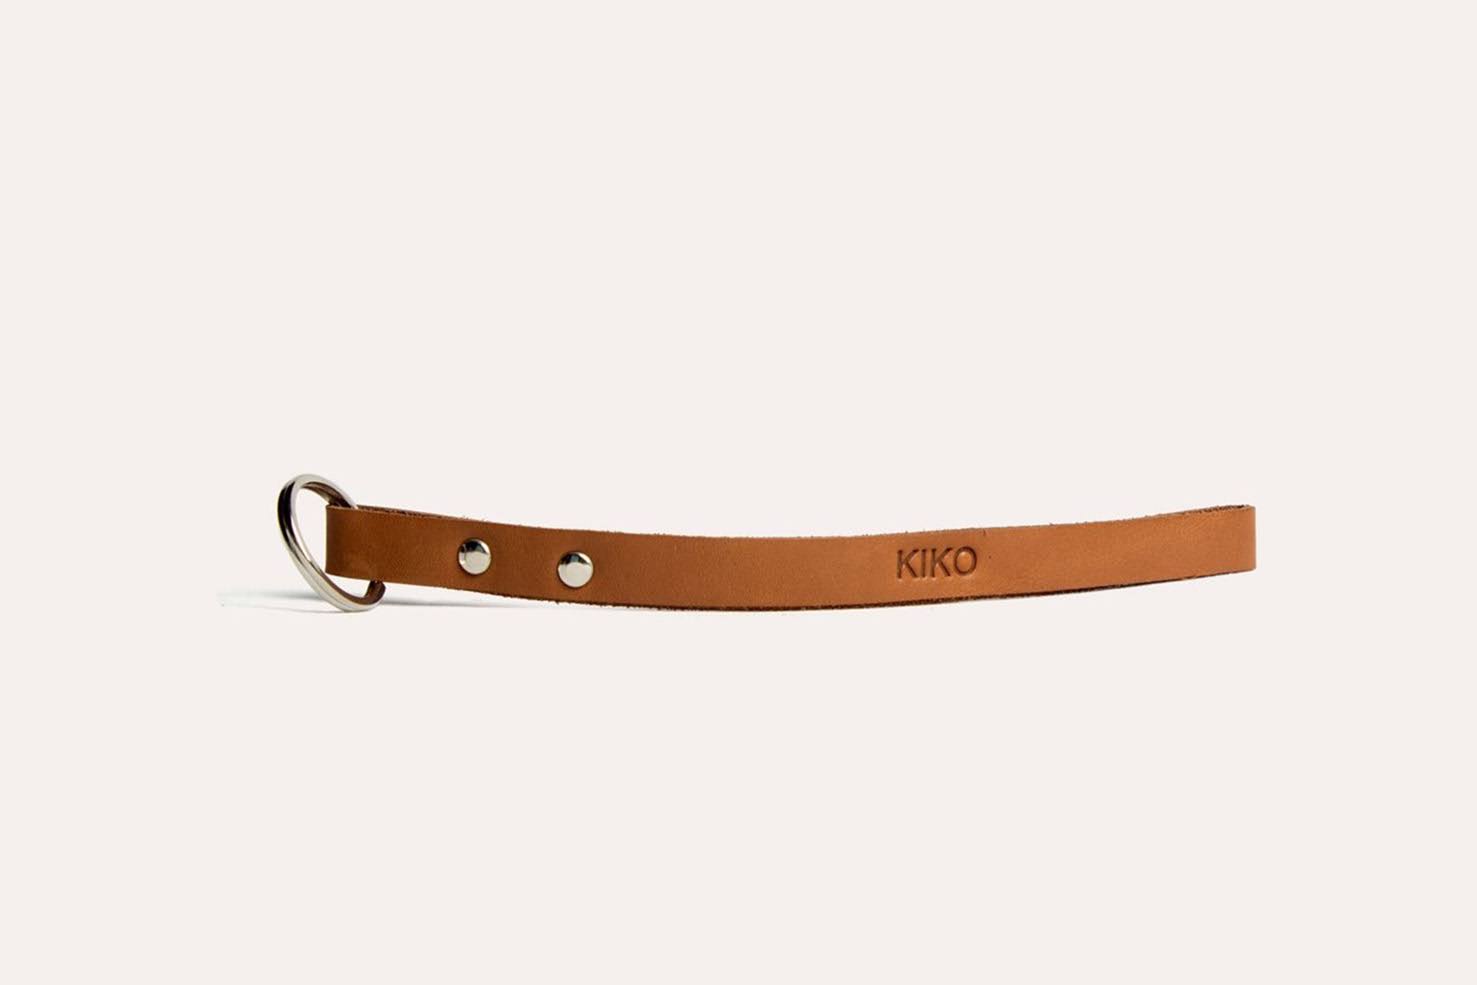 Kiko Leather - Leather Keychain (Brown)